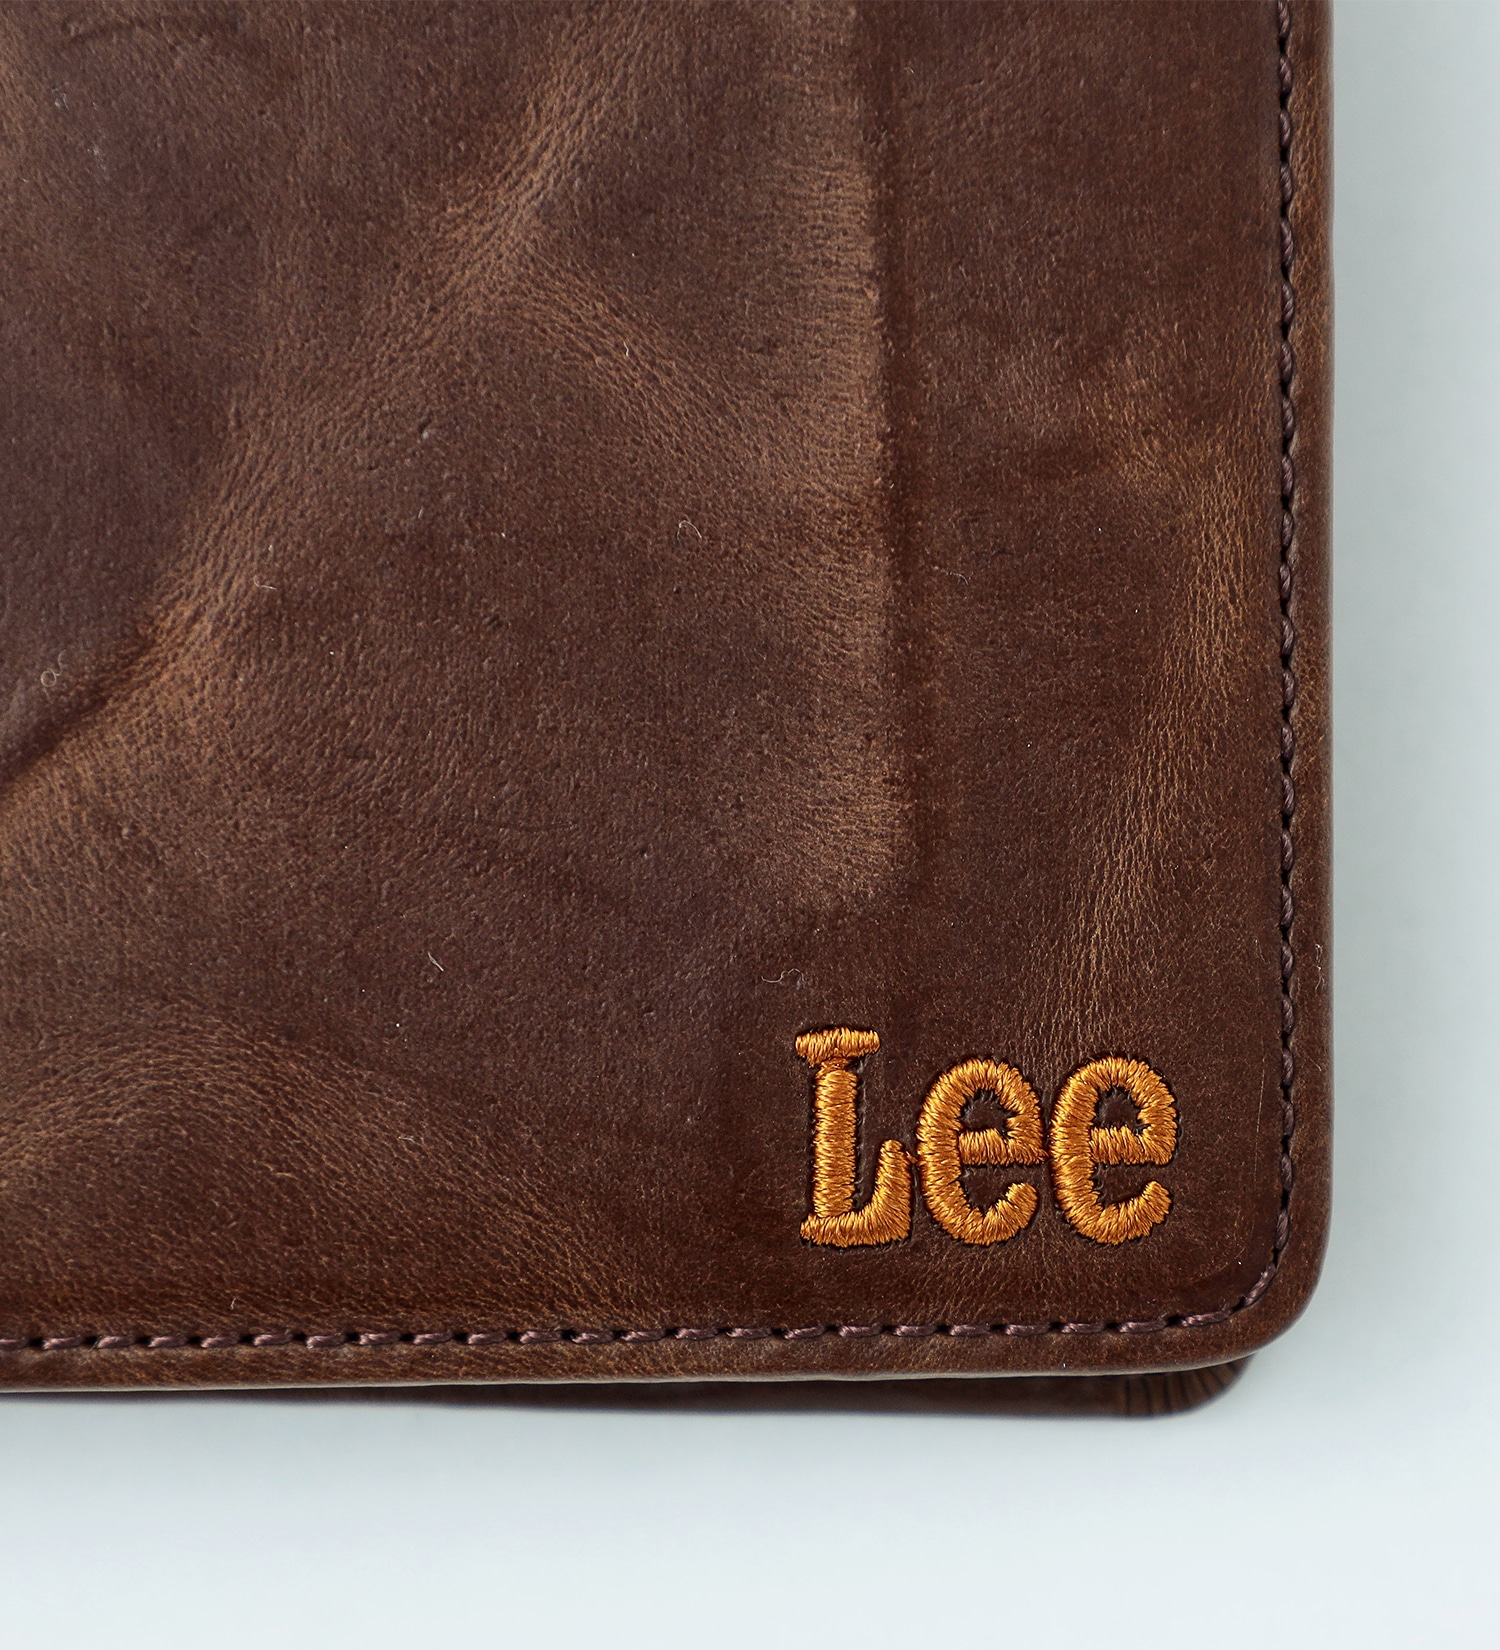 Lee(リー)のLee レザー　ウォレット|ファッション雑貨/財布/小物/メンズ|ダークブラウン